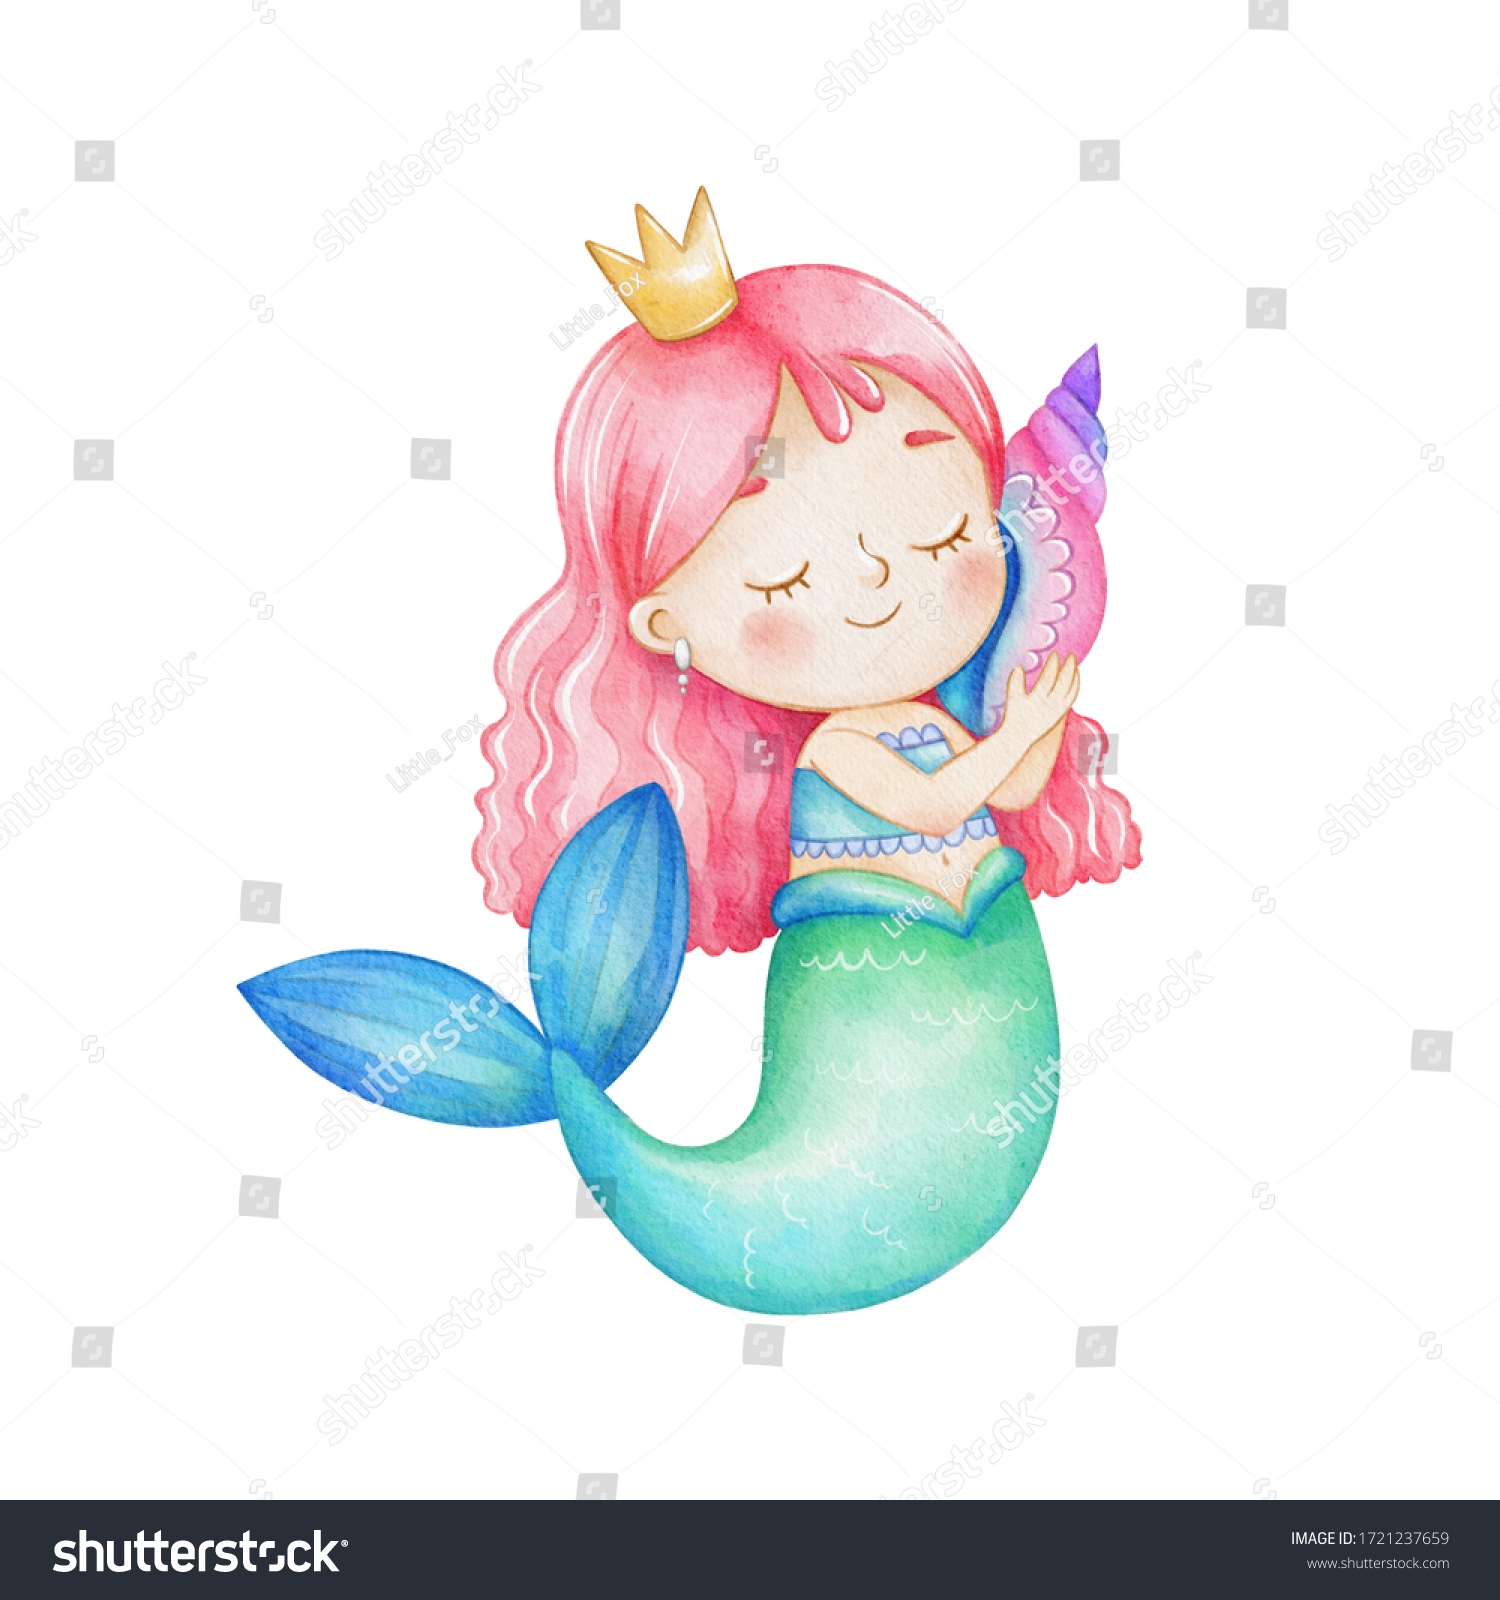 白い背景にかわいい人魚の女の子と殻の付いた王冠 青緑の尾にピンクの髪をした漫画風の人魚の絵 水彩紙のテクスチャー のイラスト素材 Shutterstock